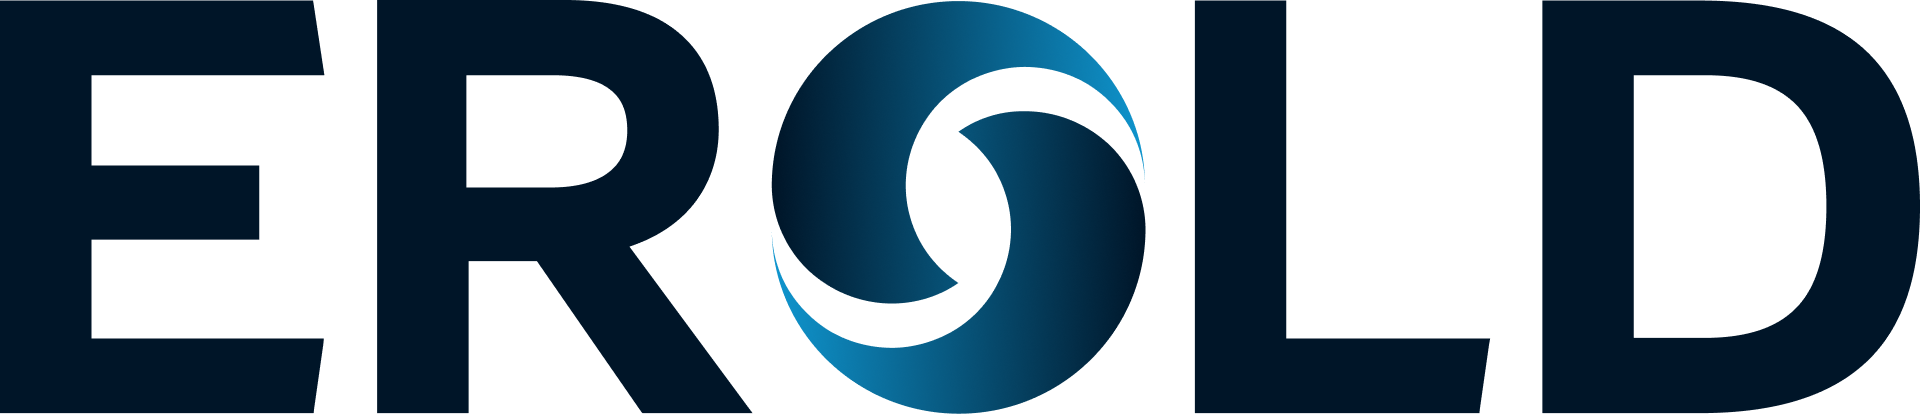 EROLD_Logo.png